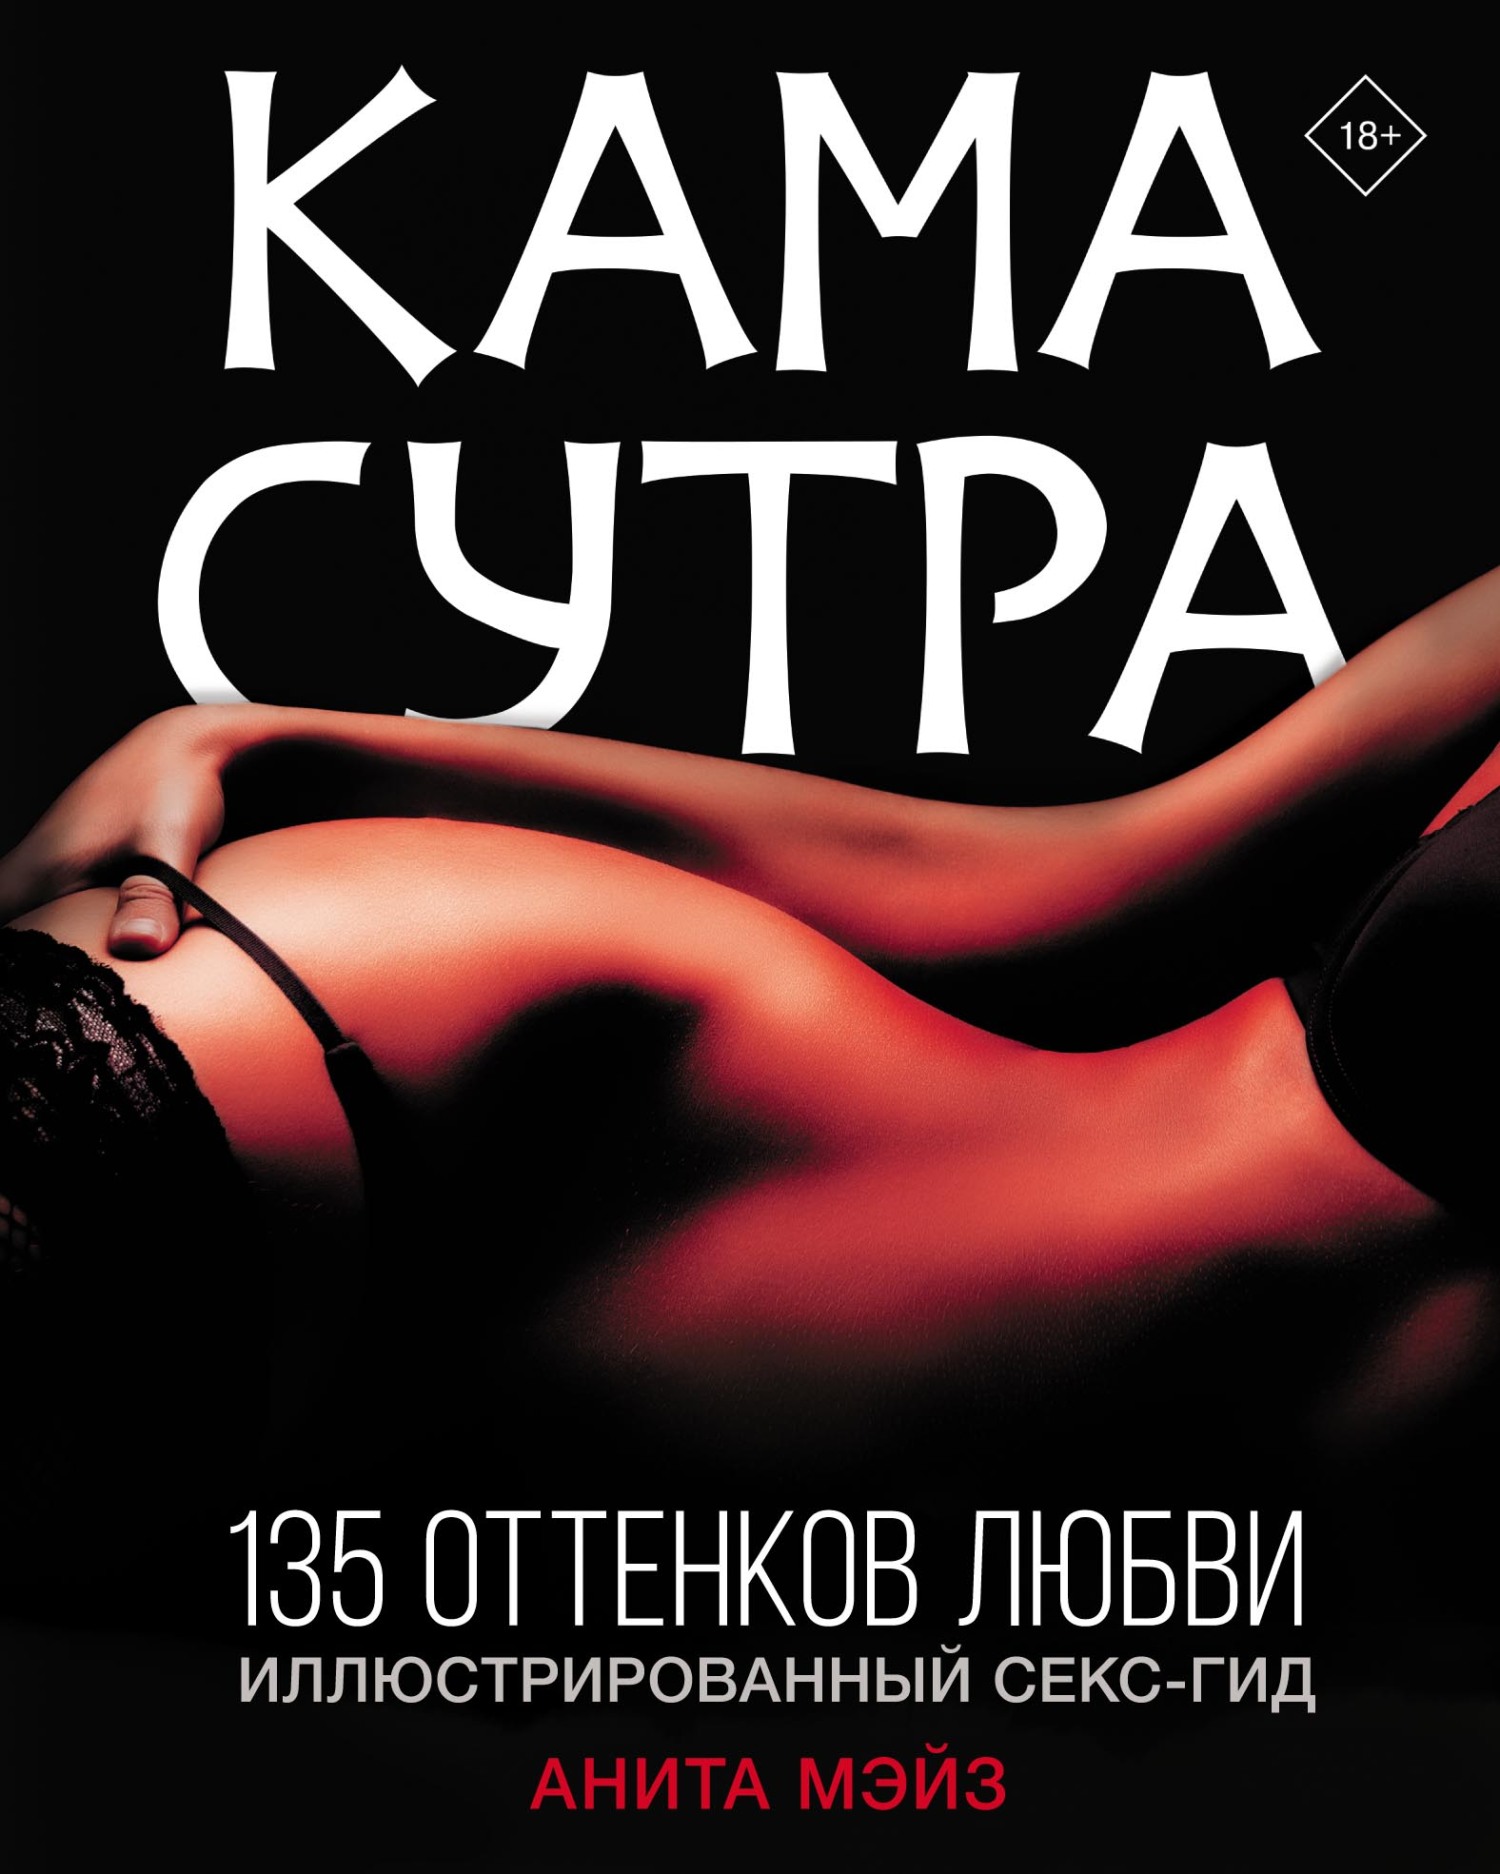 Камасутра позы - порно видео на заточка63.рф